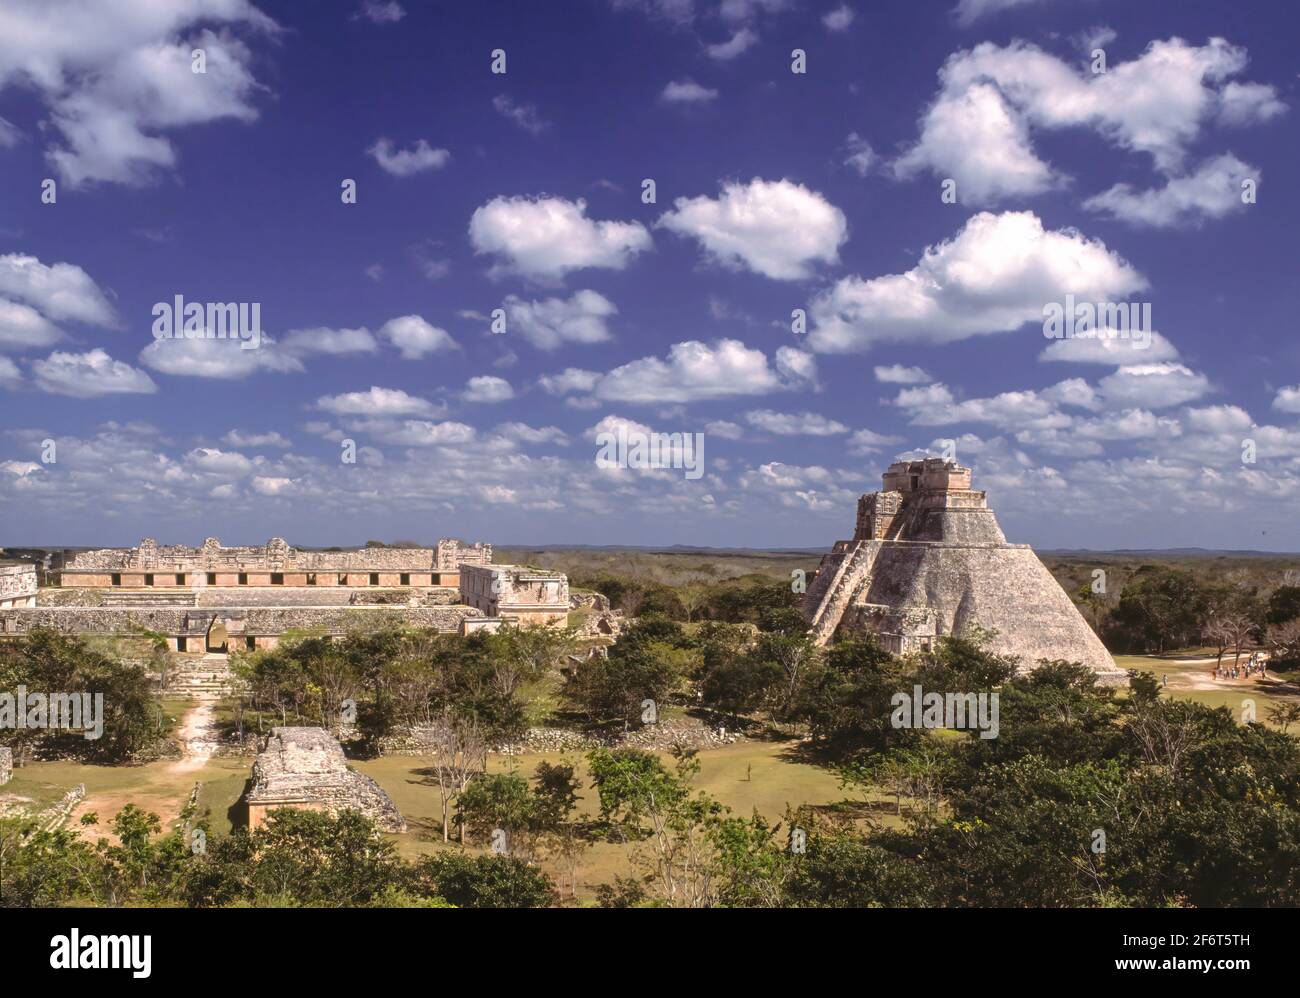 Uxmal es una antigua ciudad maya de la época clásica en el México actual. Es considerado uno de los sitios arqueológicos más importantes de Maya Foto de stock